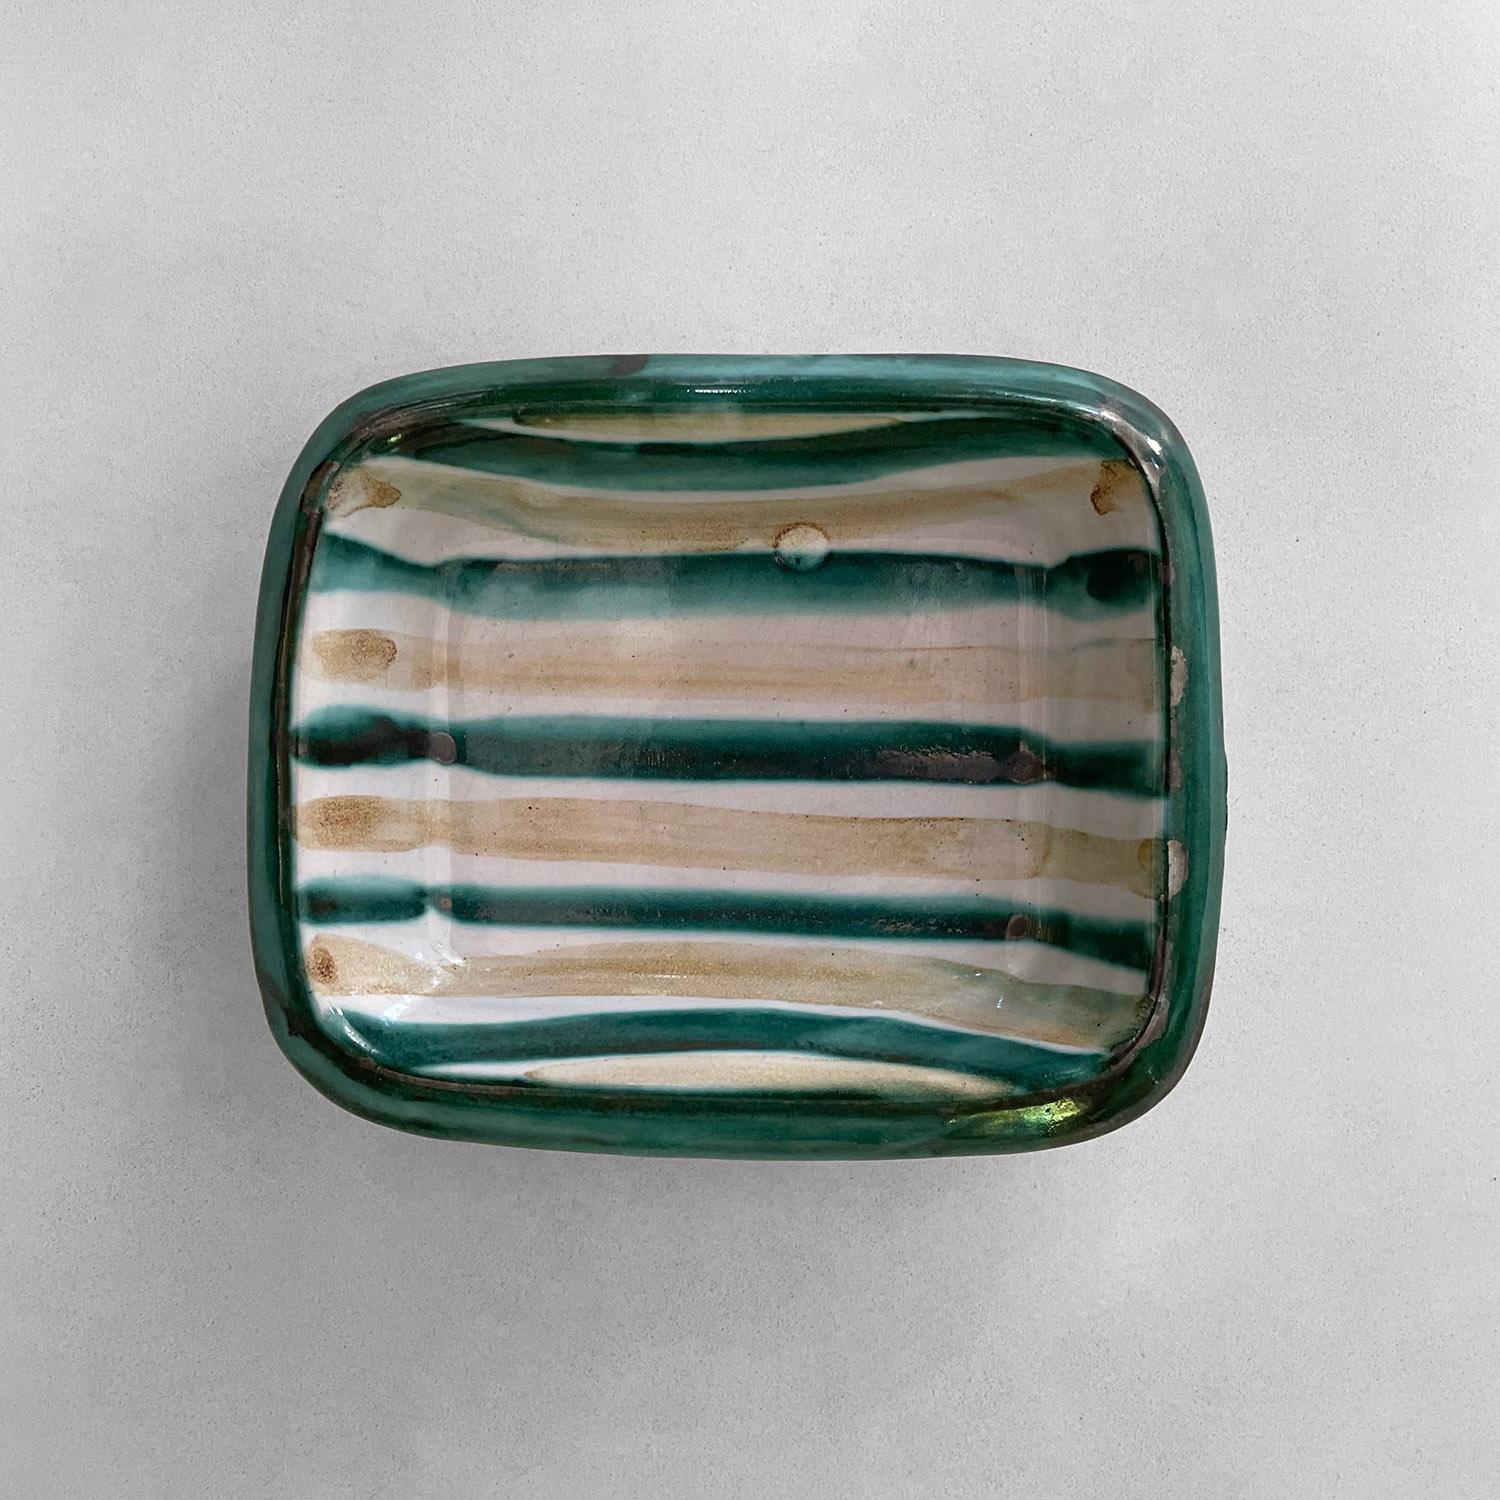 Robert Picault Vase en céramique française
France, vers 1950 
Peut être utilisé comme cendrier ou comme attrape-tout.
Des motifs, des couleurs et un design éclatants
Pas de dommages structurels
Patine d'âge et d'utilisation
Identification